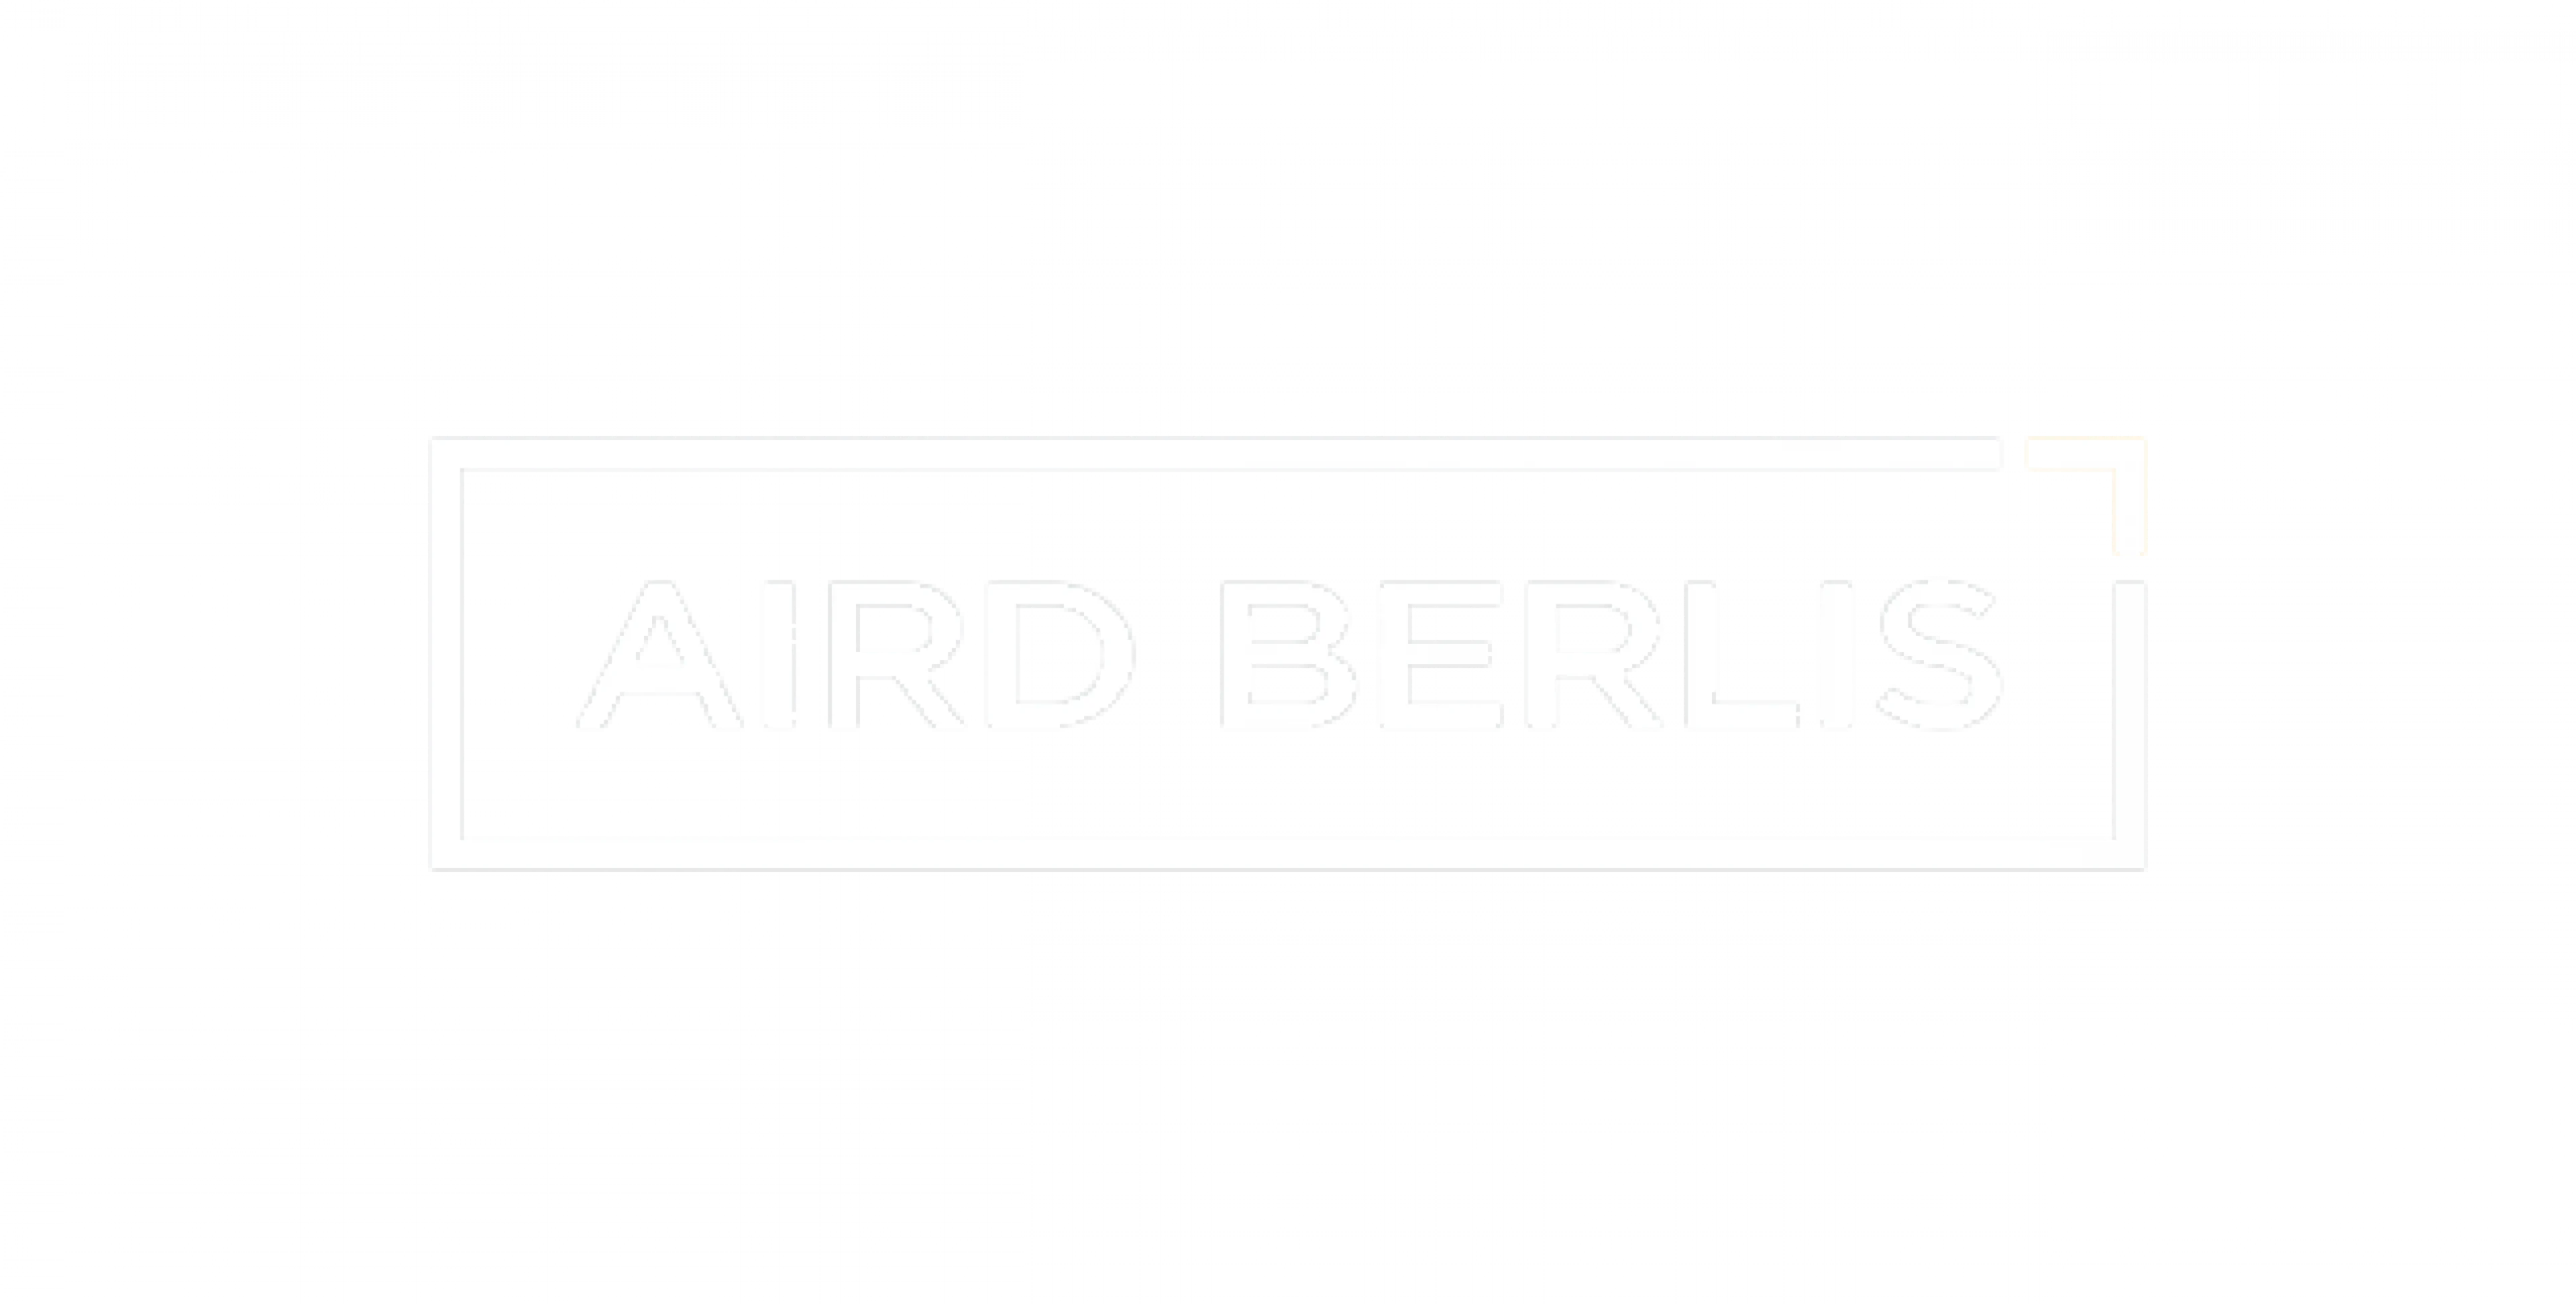 Aird Berlis